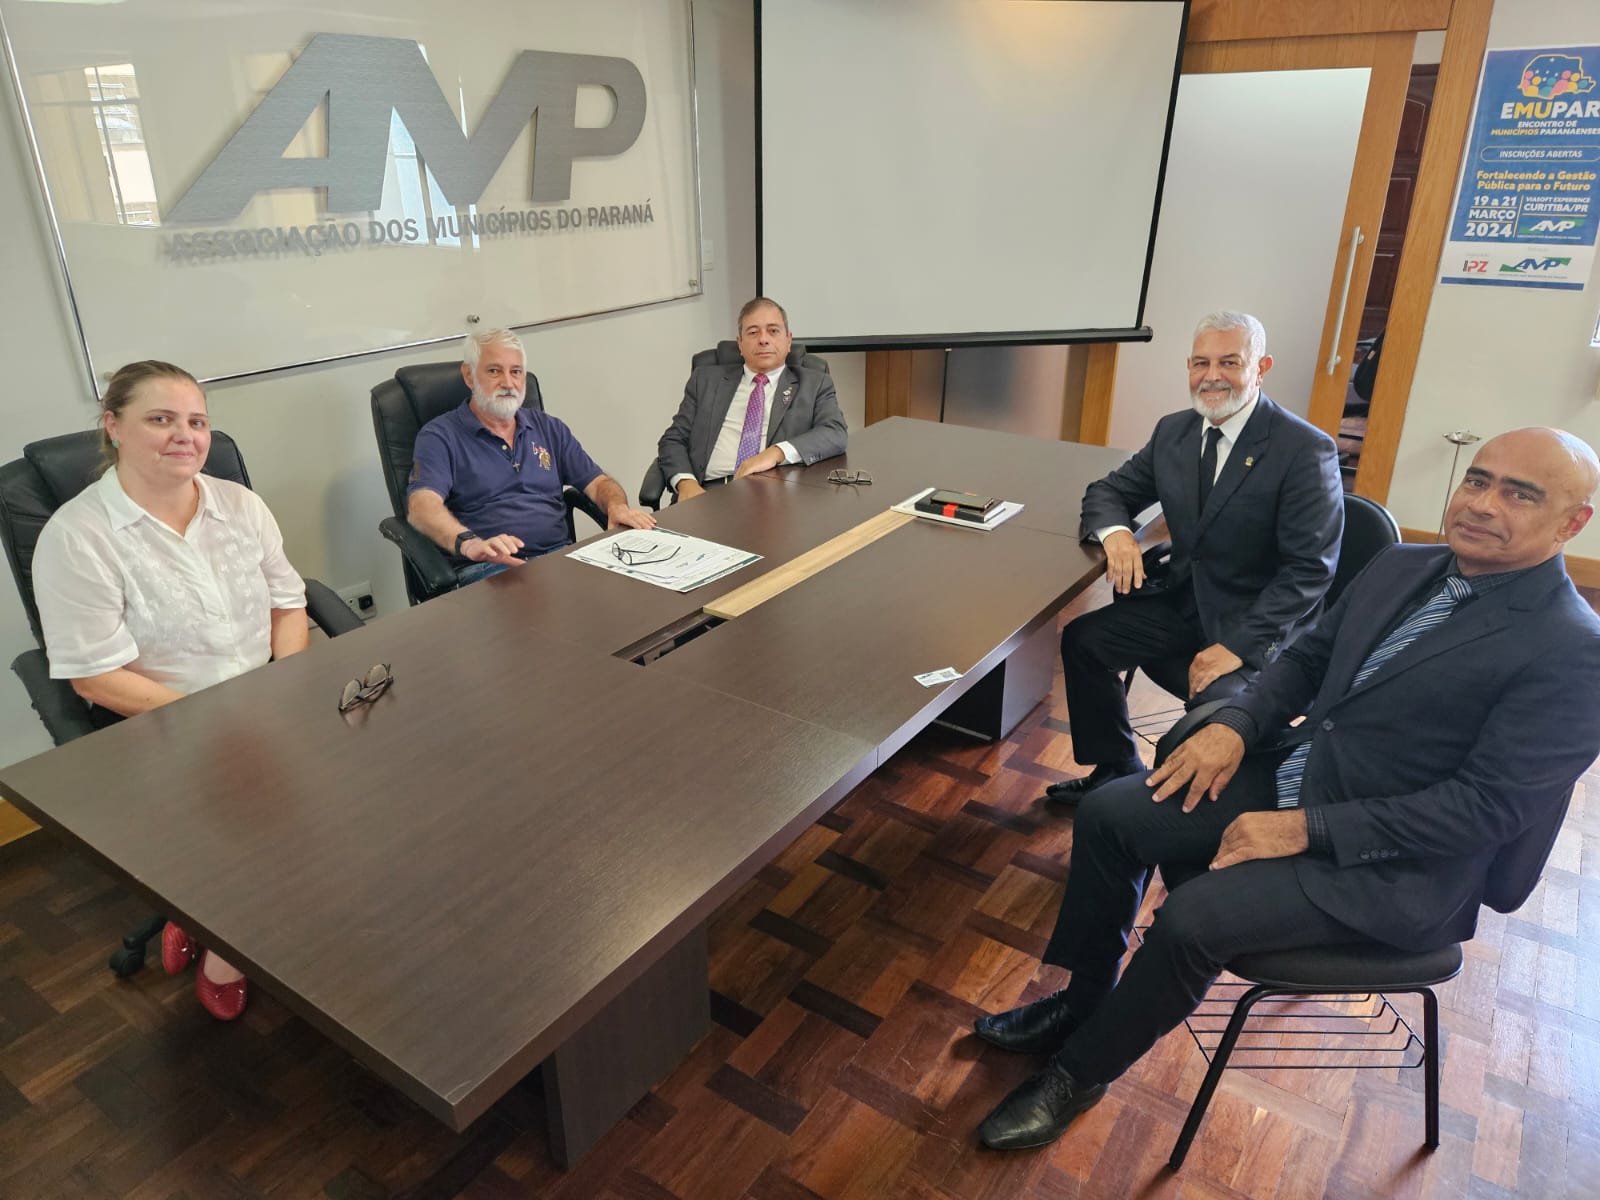 Sindafep e AMP renovam parceria para a 12ª edição do Prêmio Gestor Público Paraná